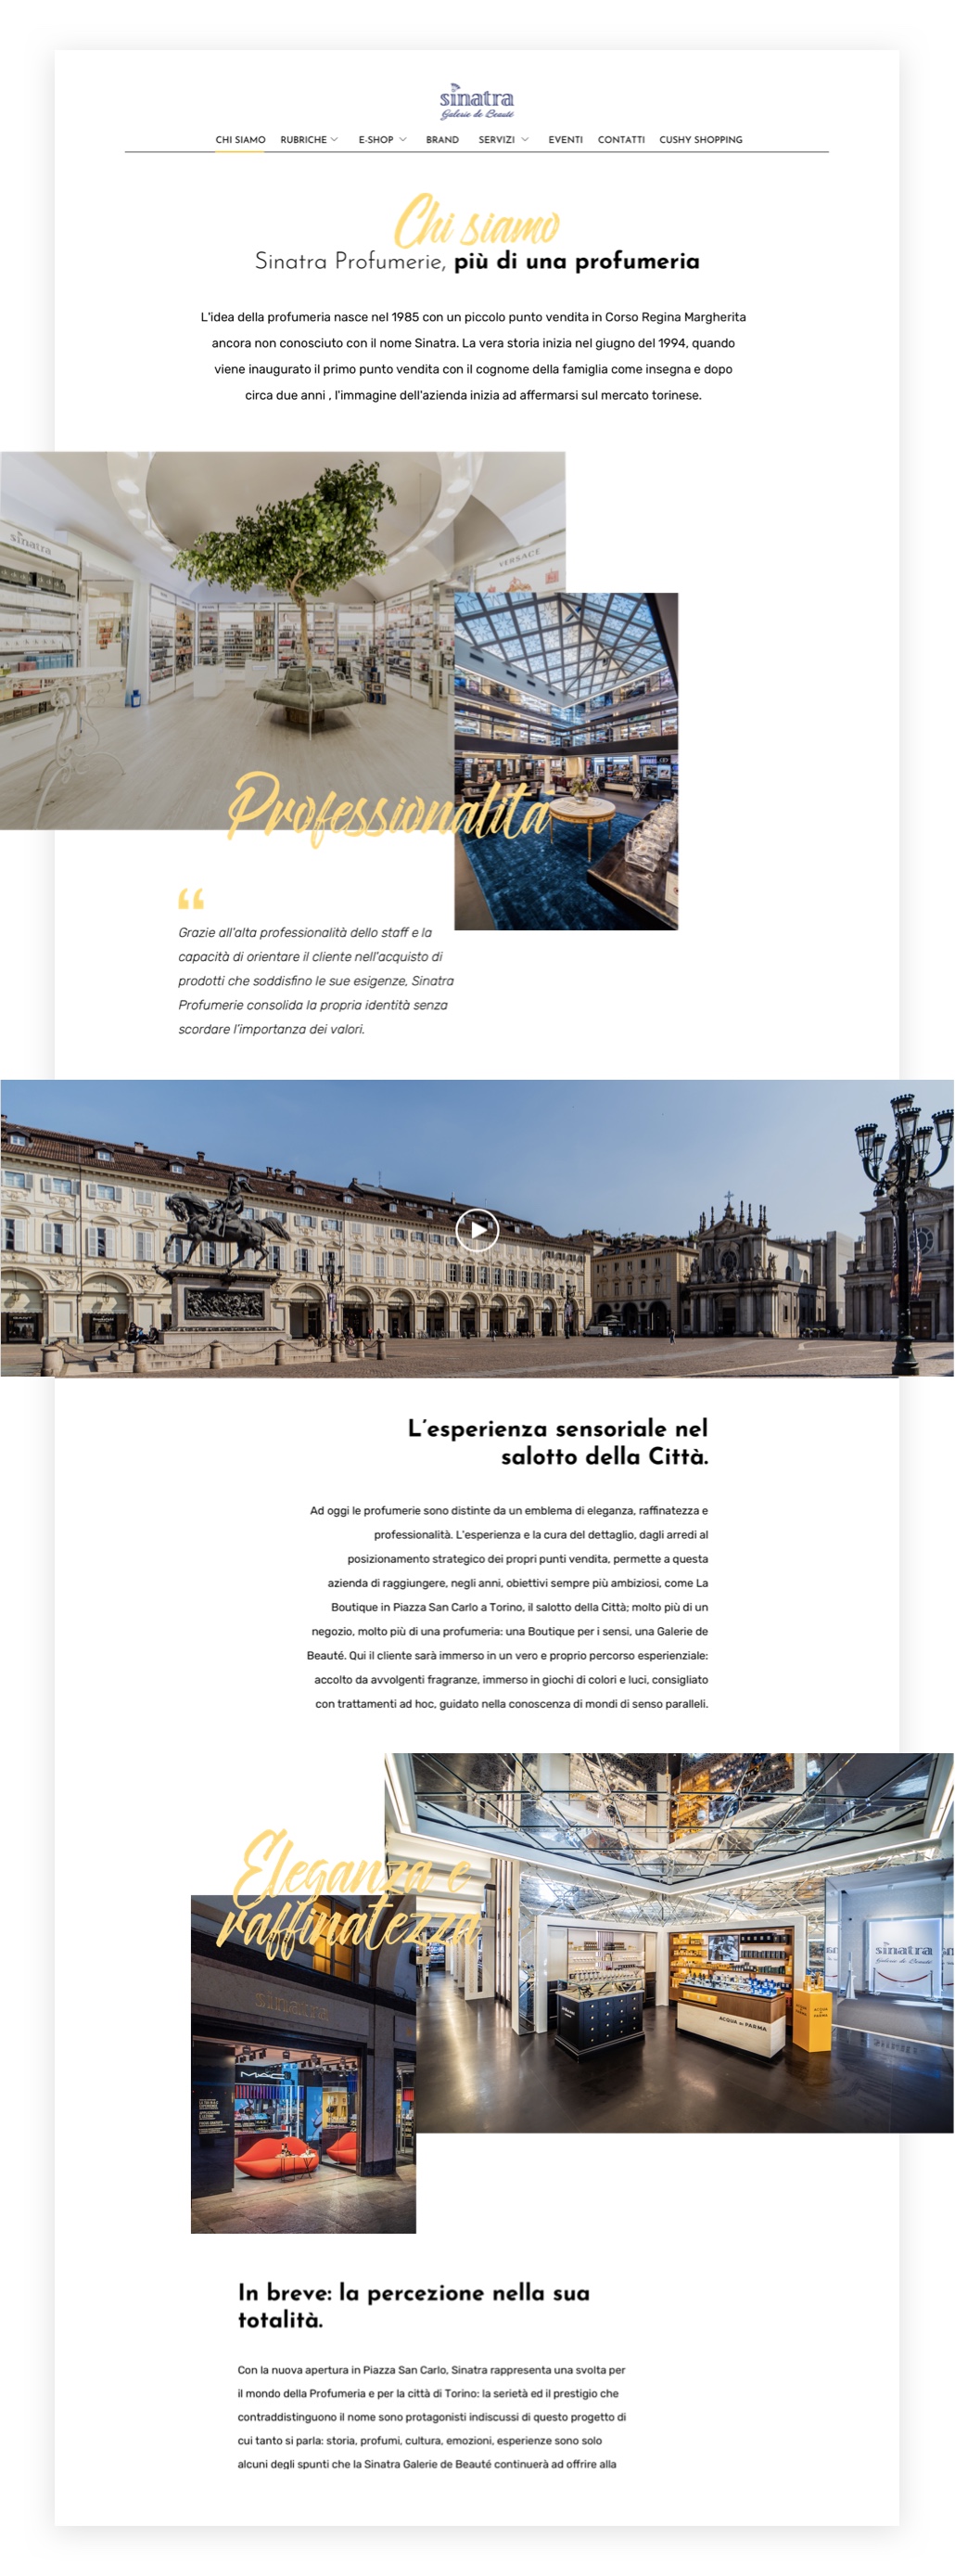 Una profumeria nel salotto della città di Torino: lo sviluppo del nuovo sito web di Sinatra Profumerie